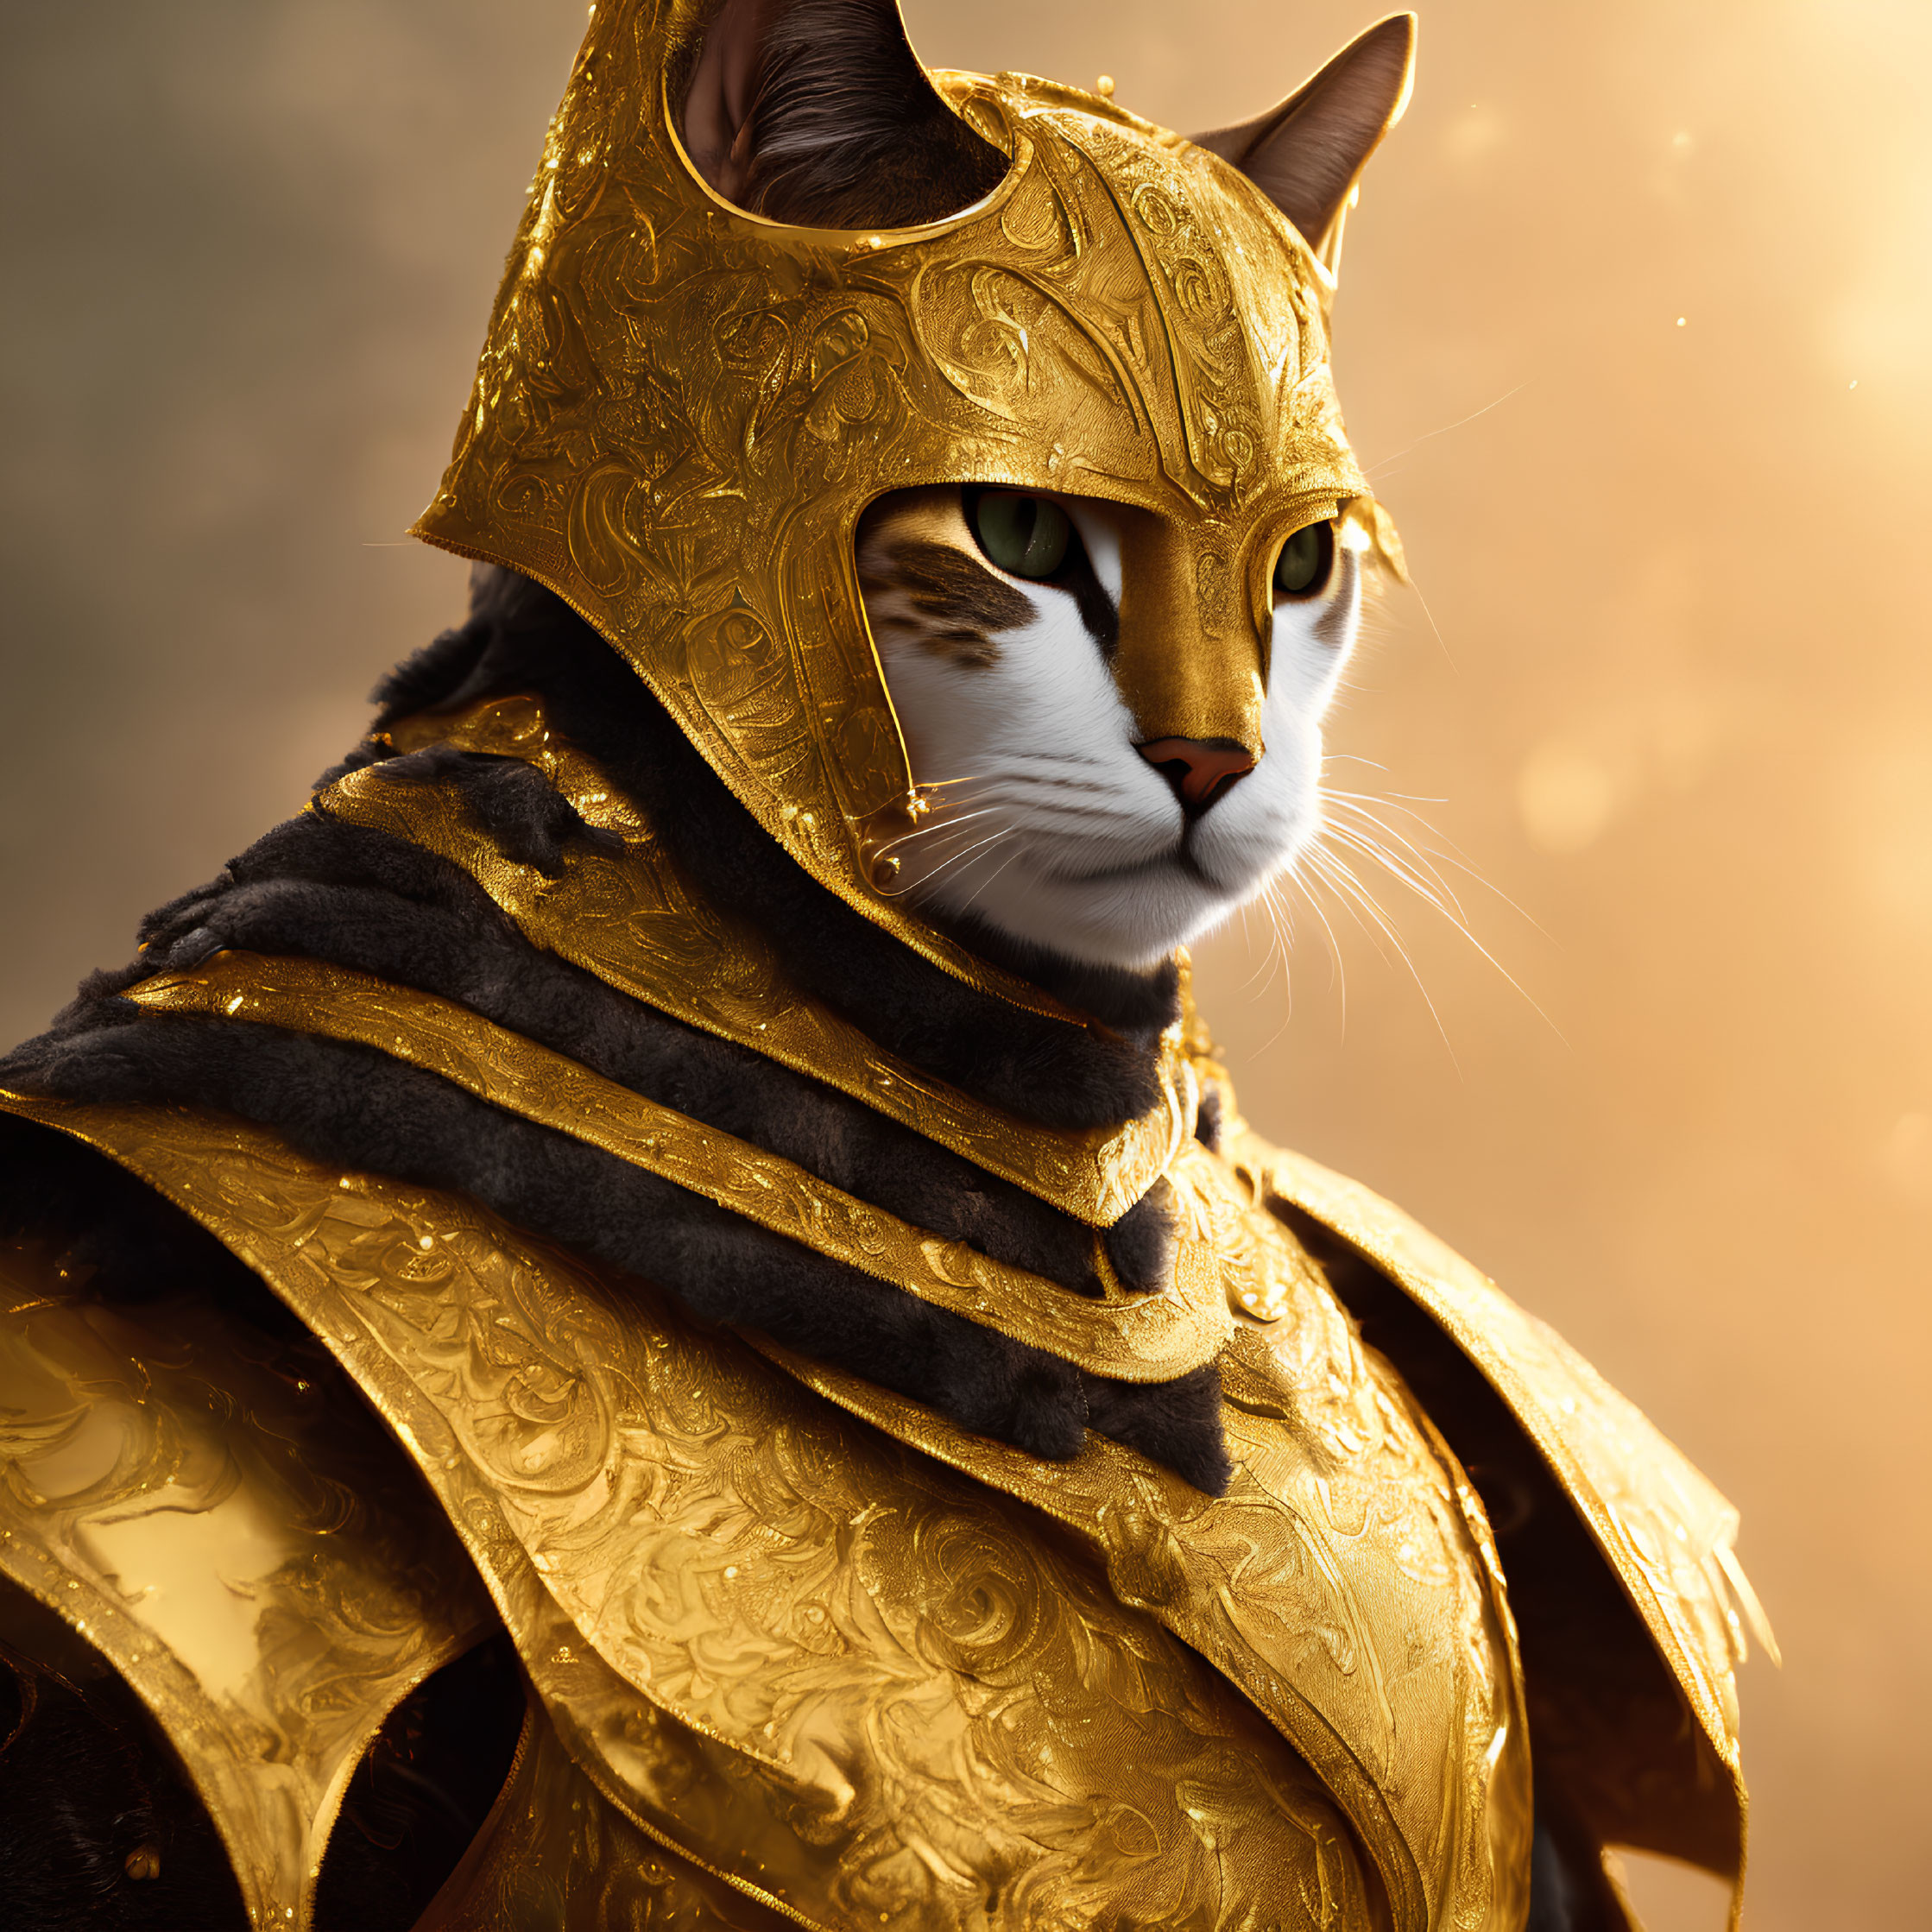 Digital artwork: Stoic cat in ornate golden armor